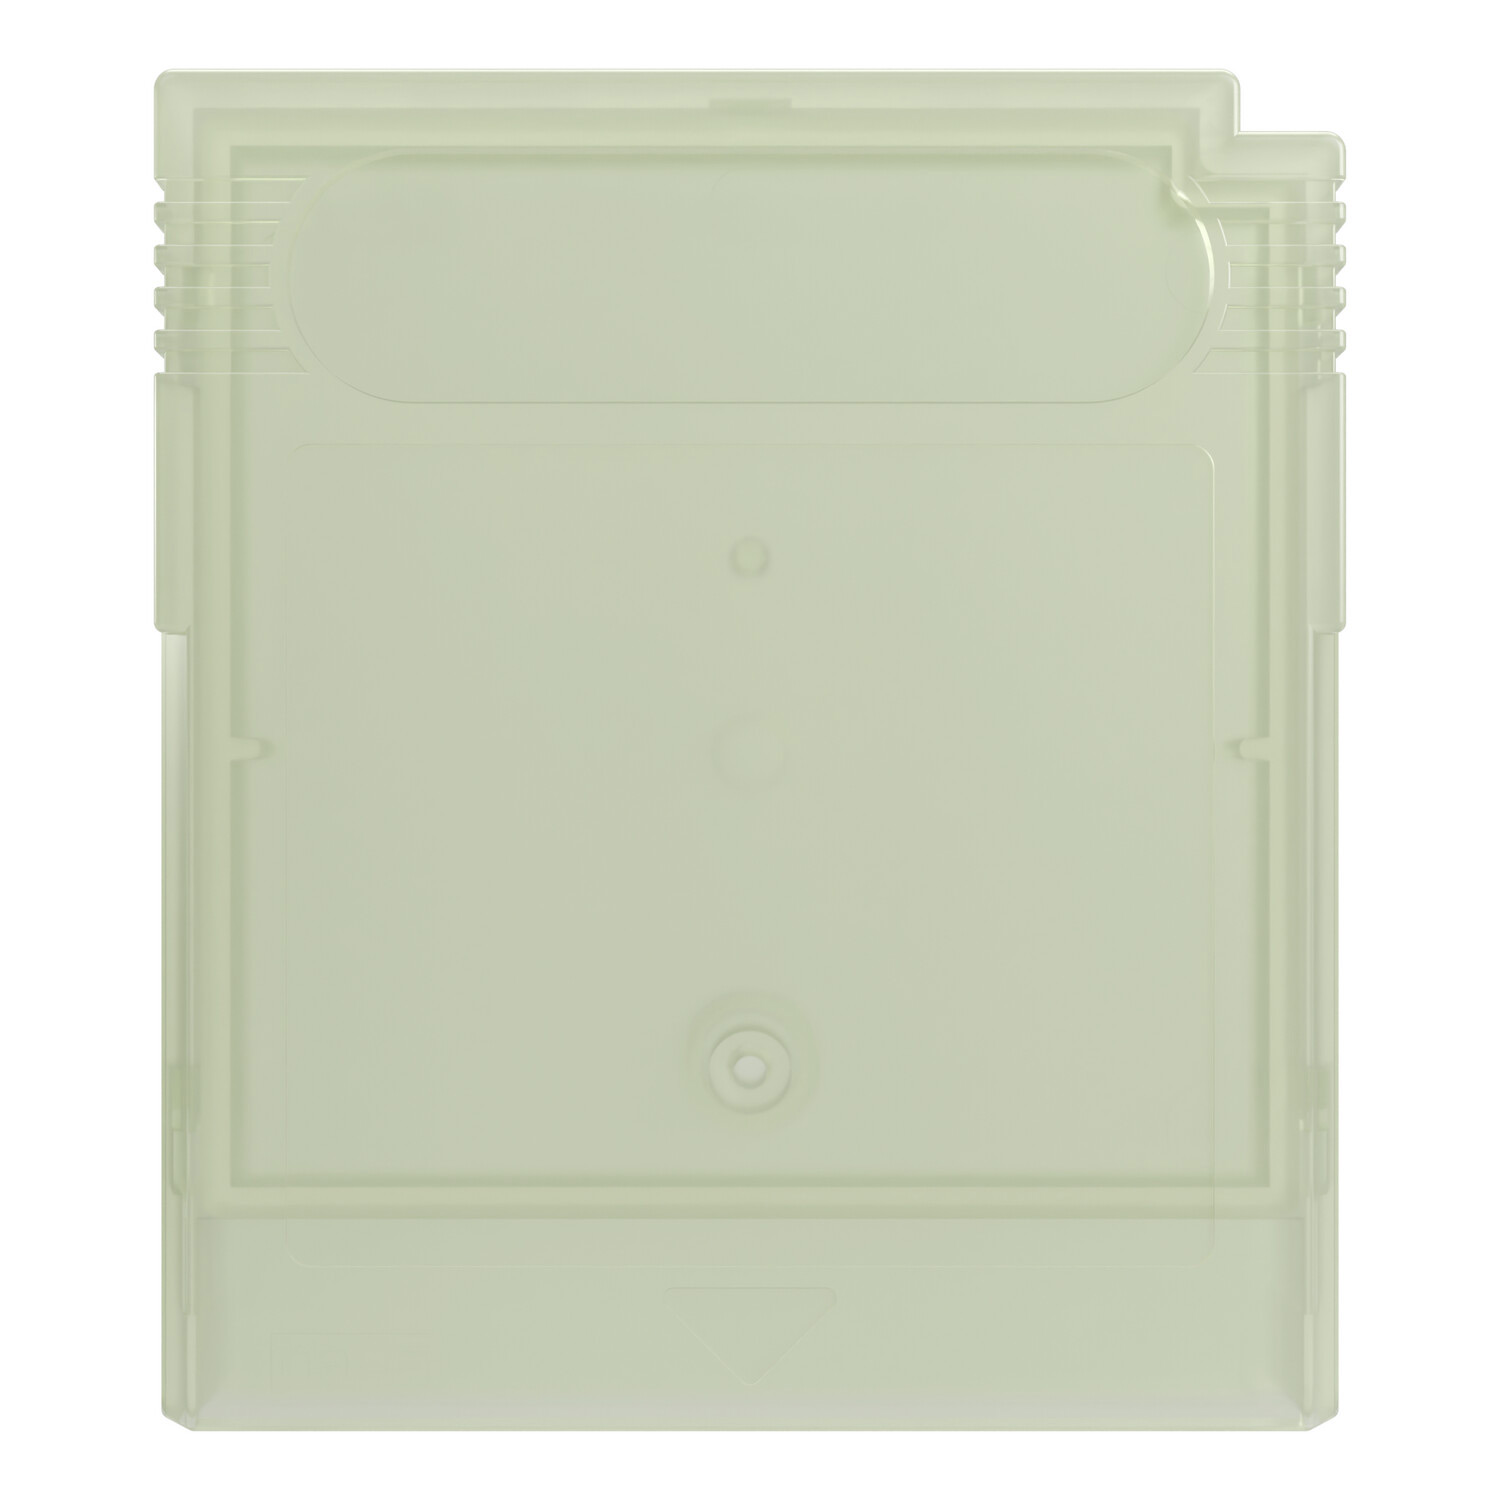 Game Boy Module Shell (White Glow)